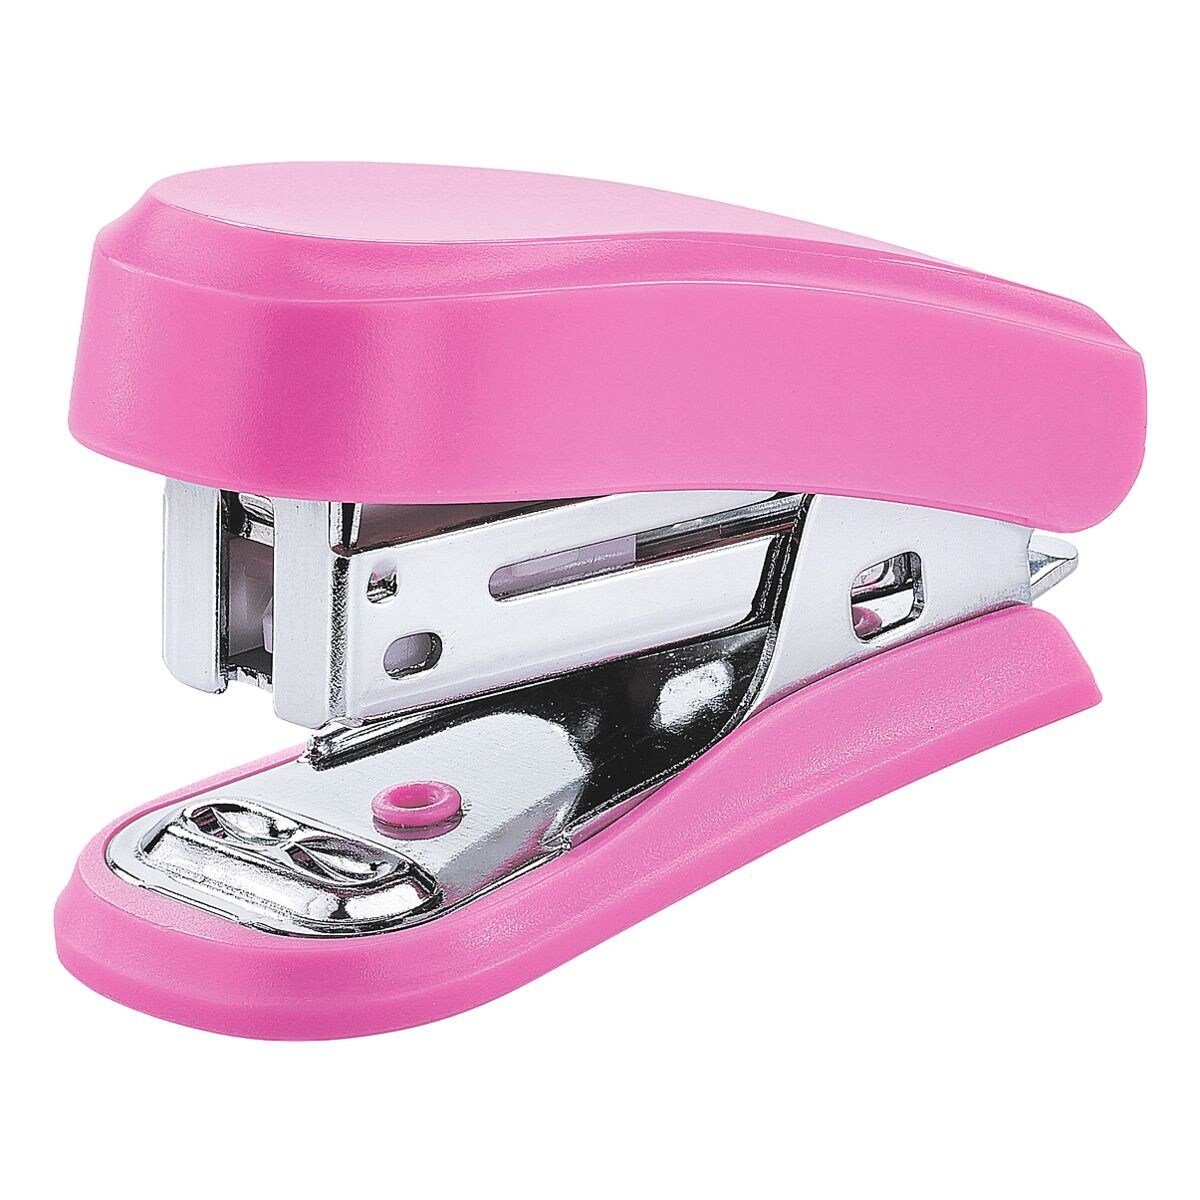 Mini, Heftgerät Klammerentferner pink integriertem NOVUS mit